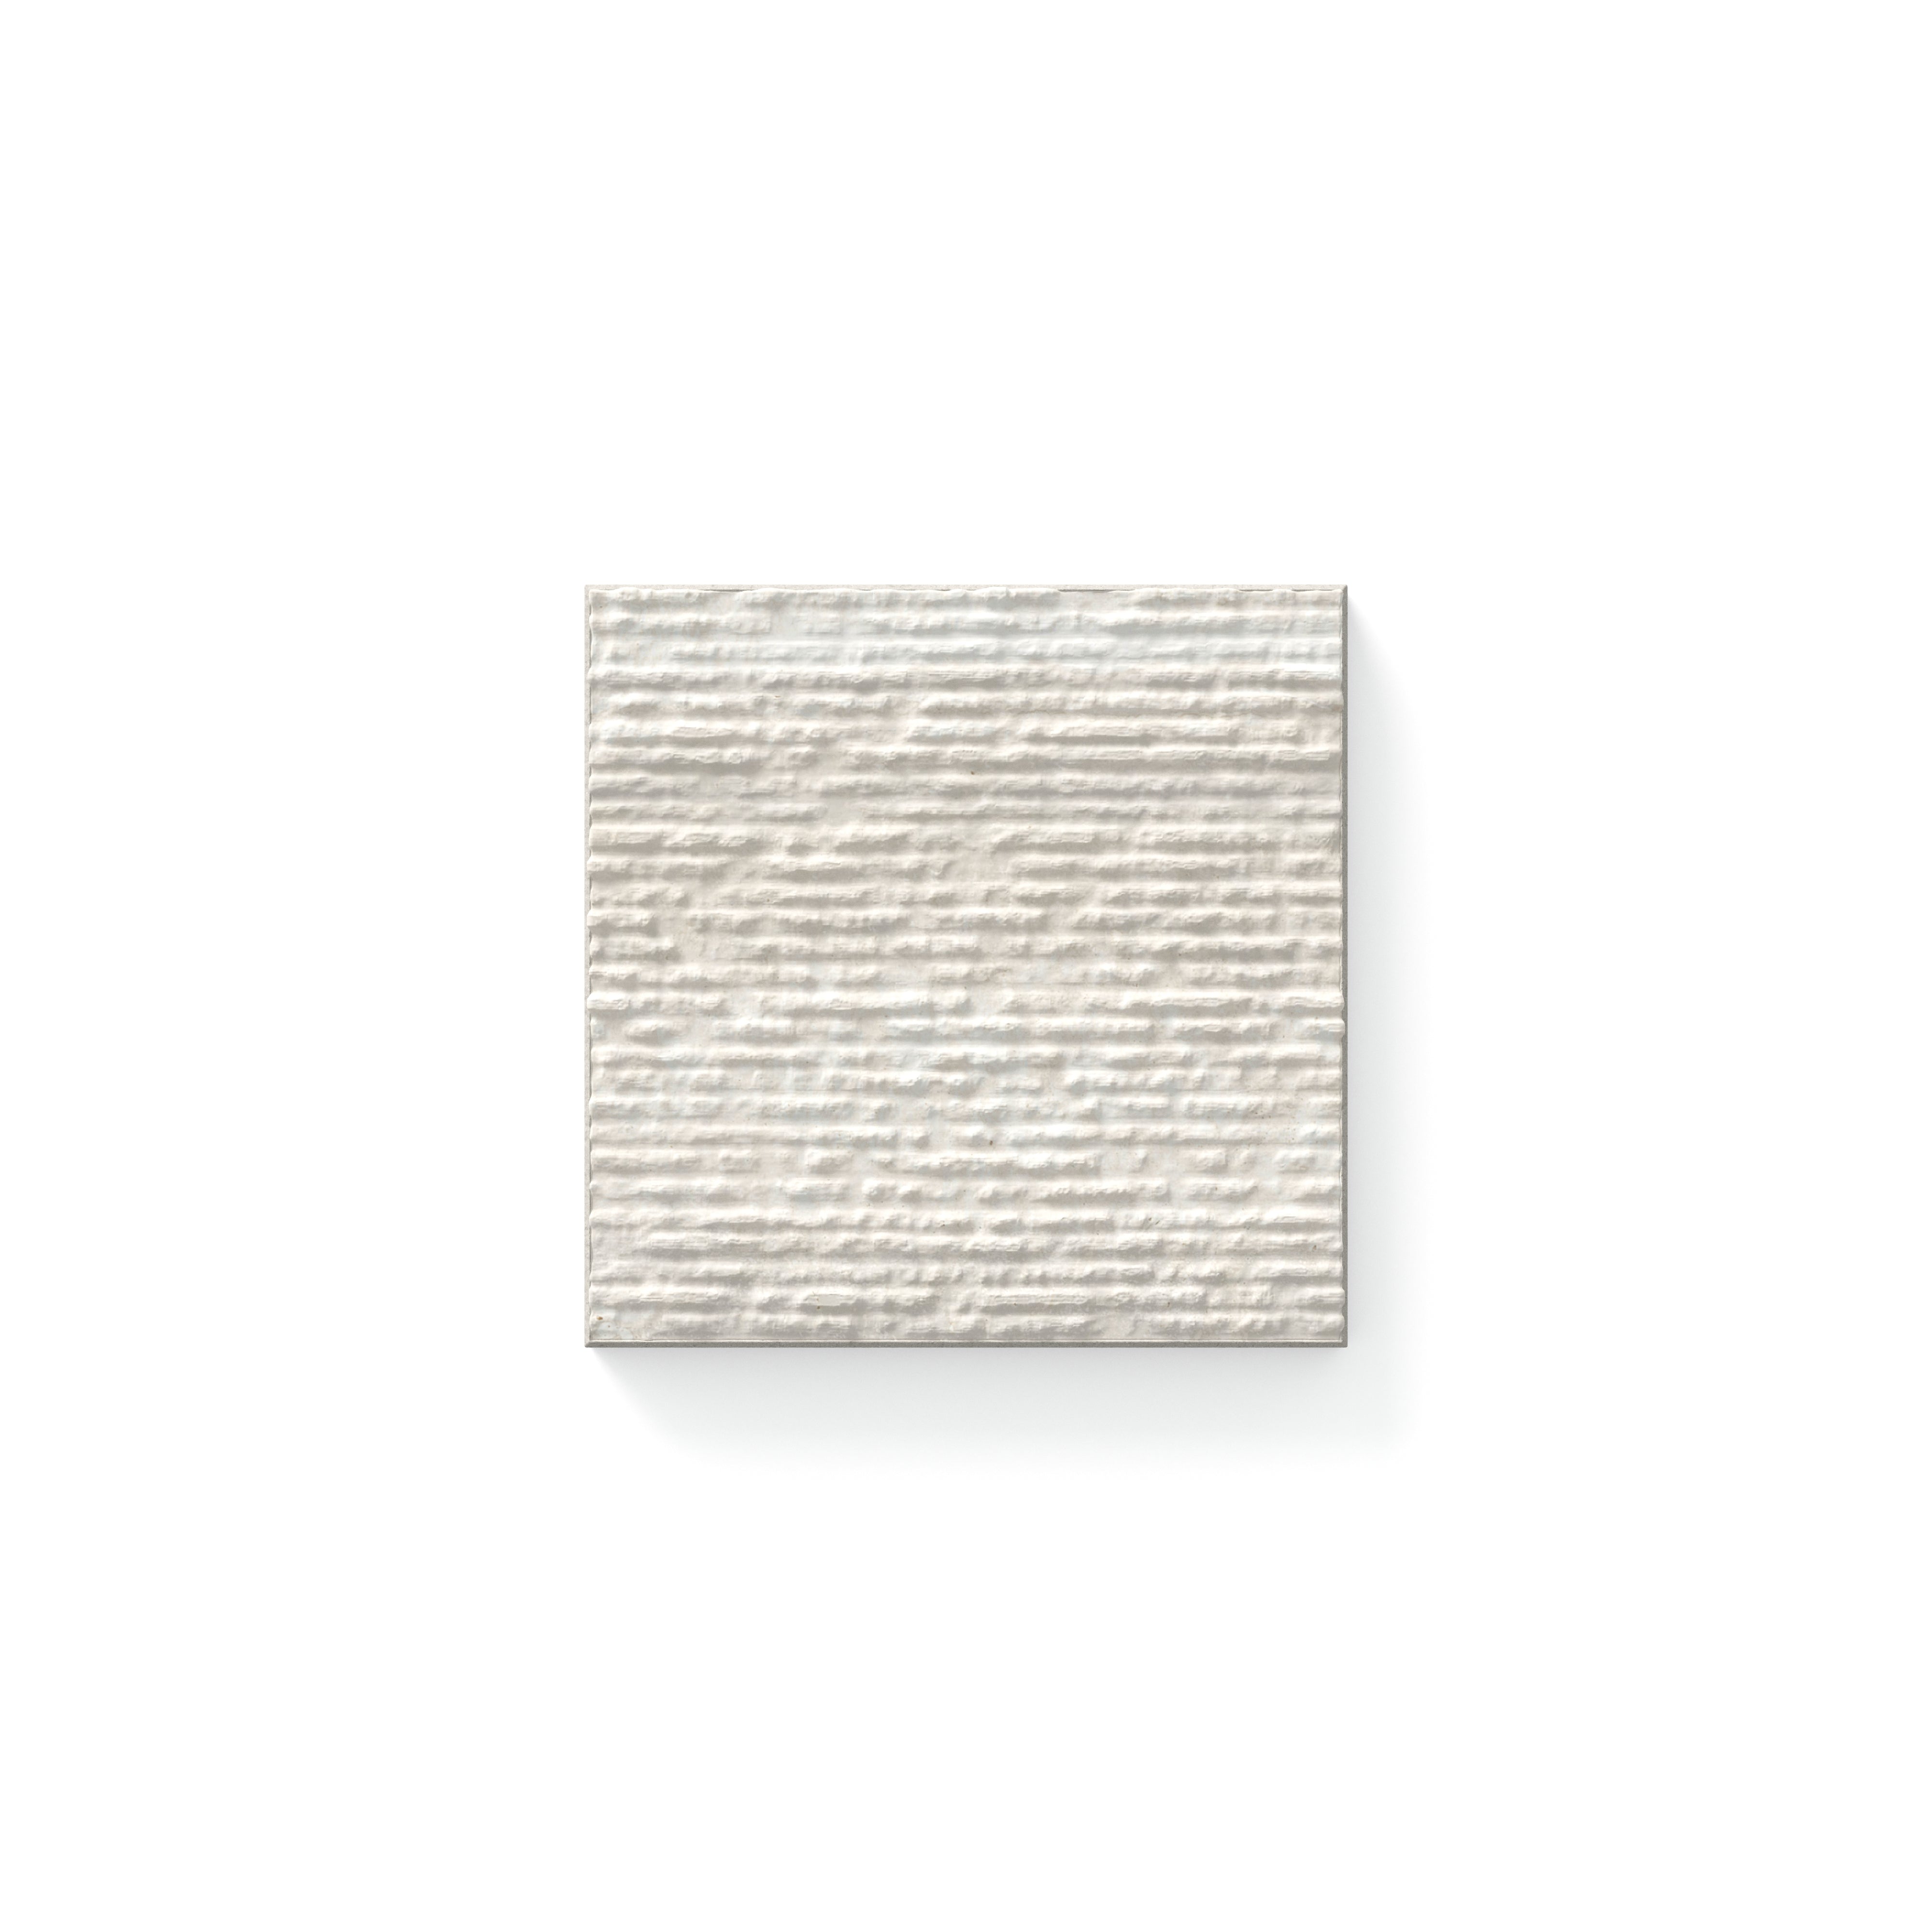 Wren Chiseled Oat 4x4 Tile Sample